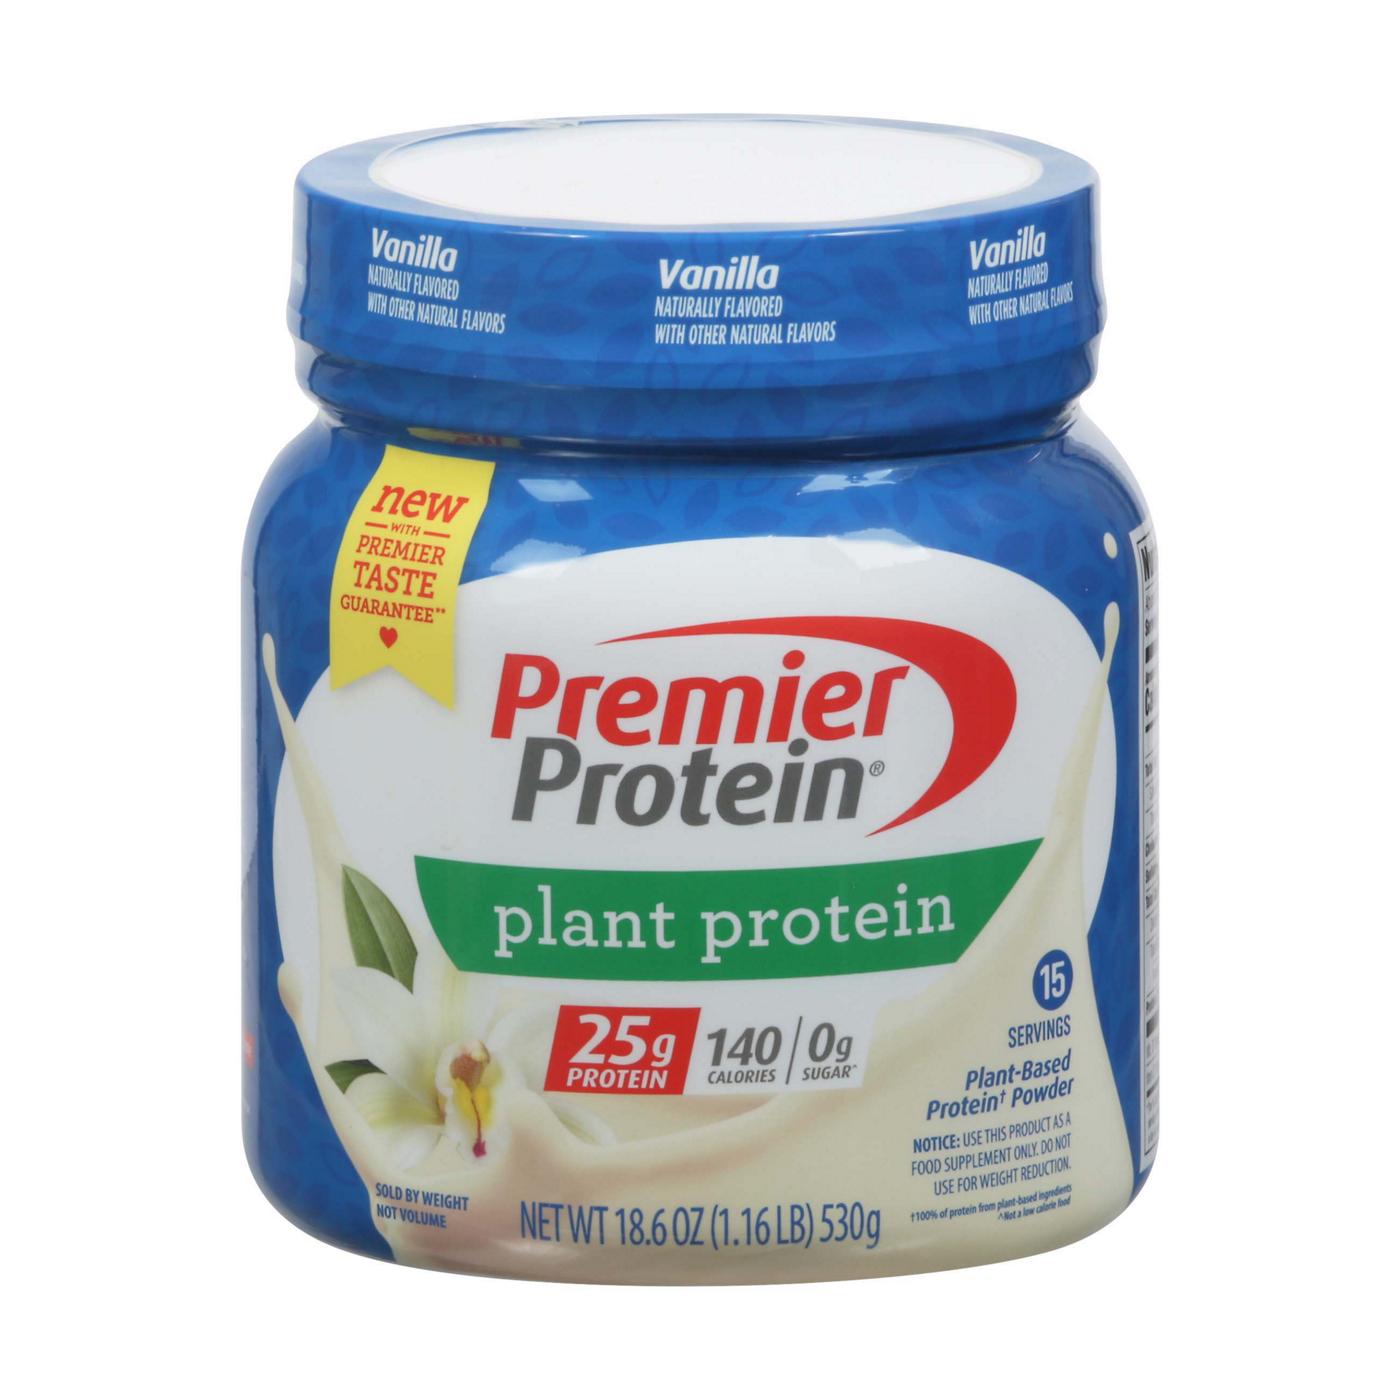 Premier Protein Plant Protein Powder, 25g - Vanilla; image 1 of 2